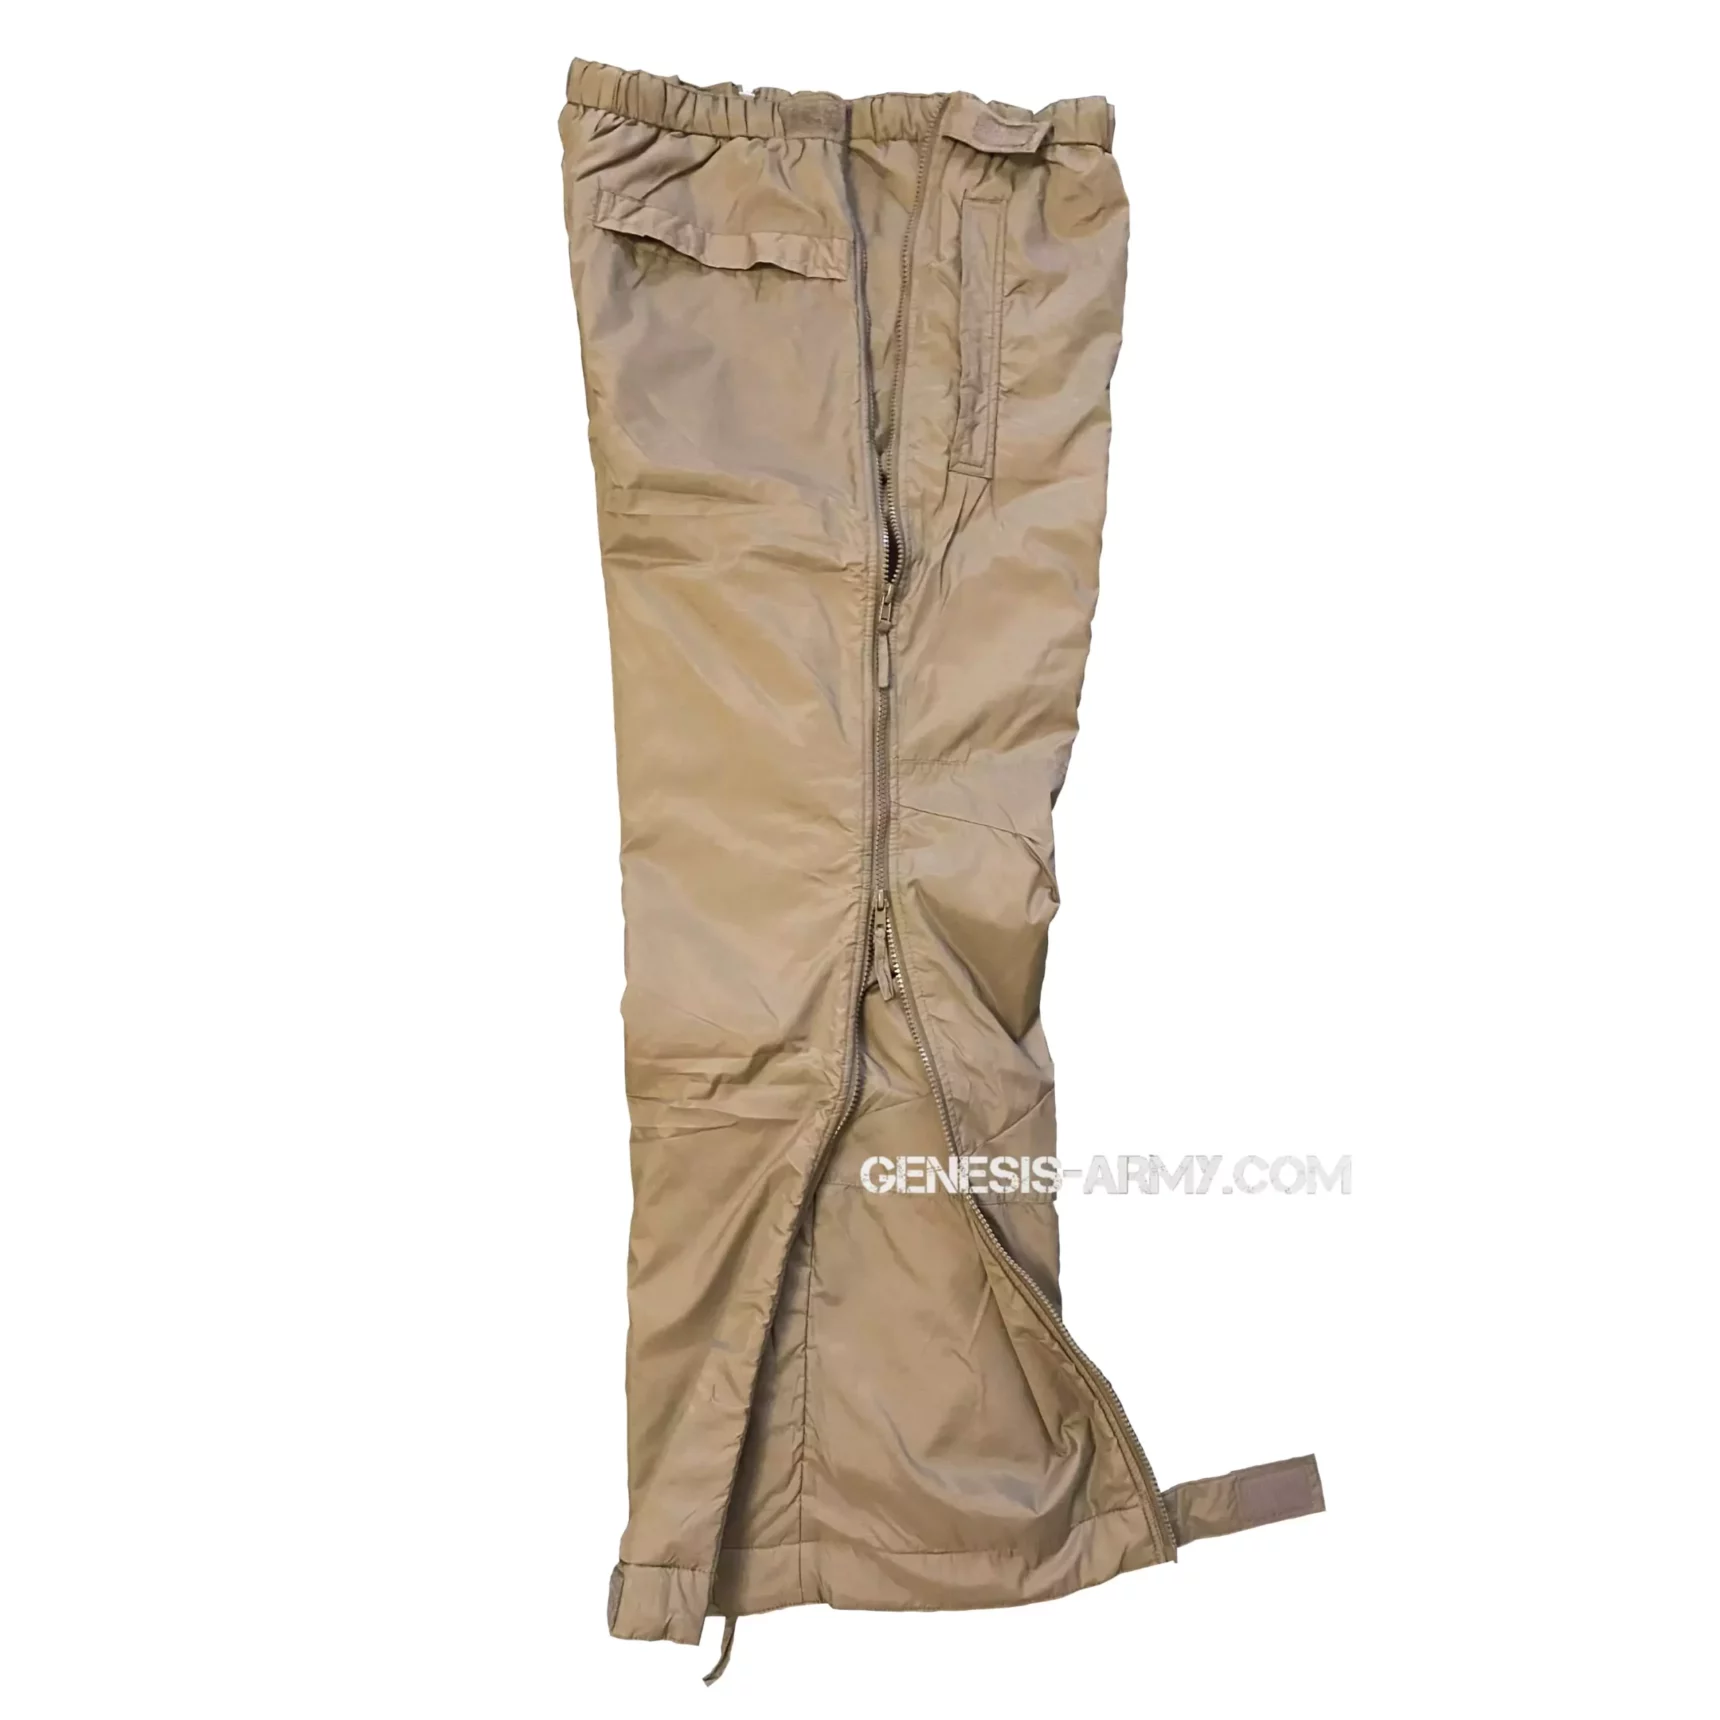 Зимові штани Level 7 армії Великобританії Trousers Thermal PCS